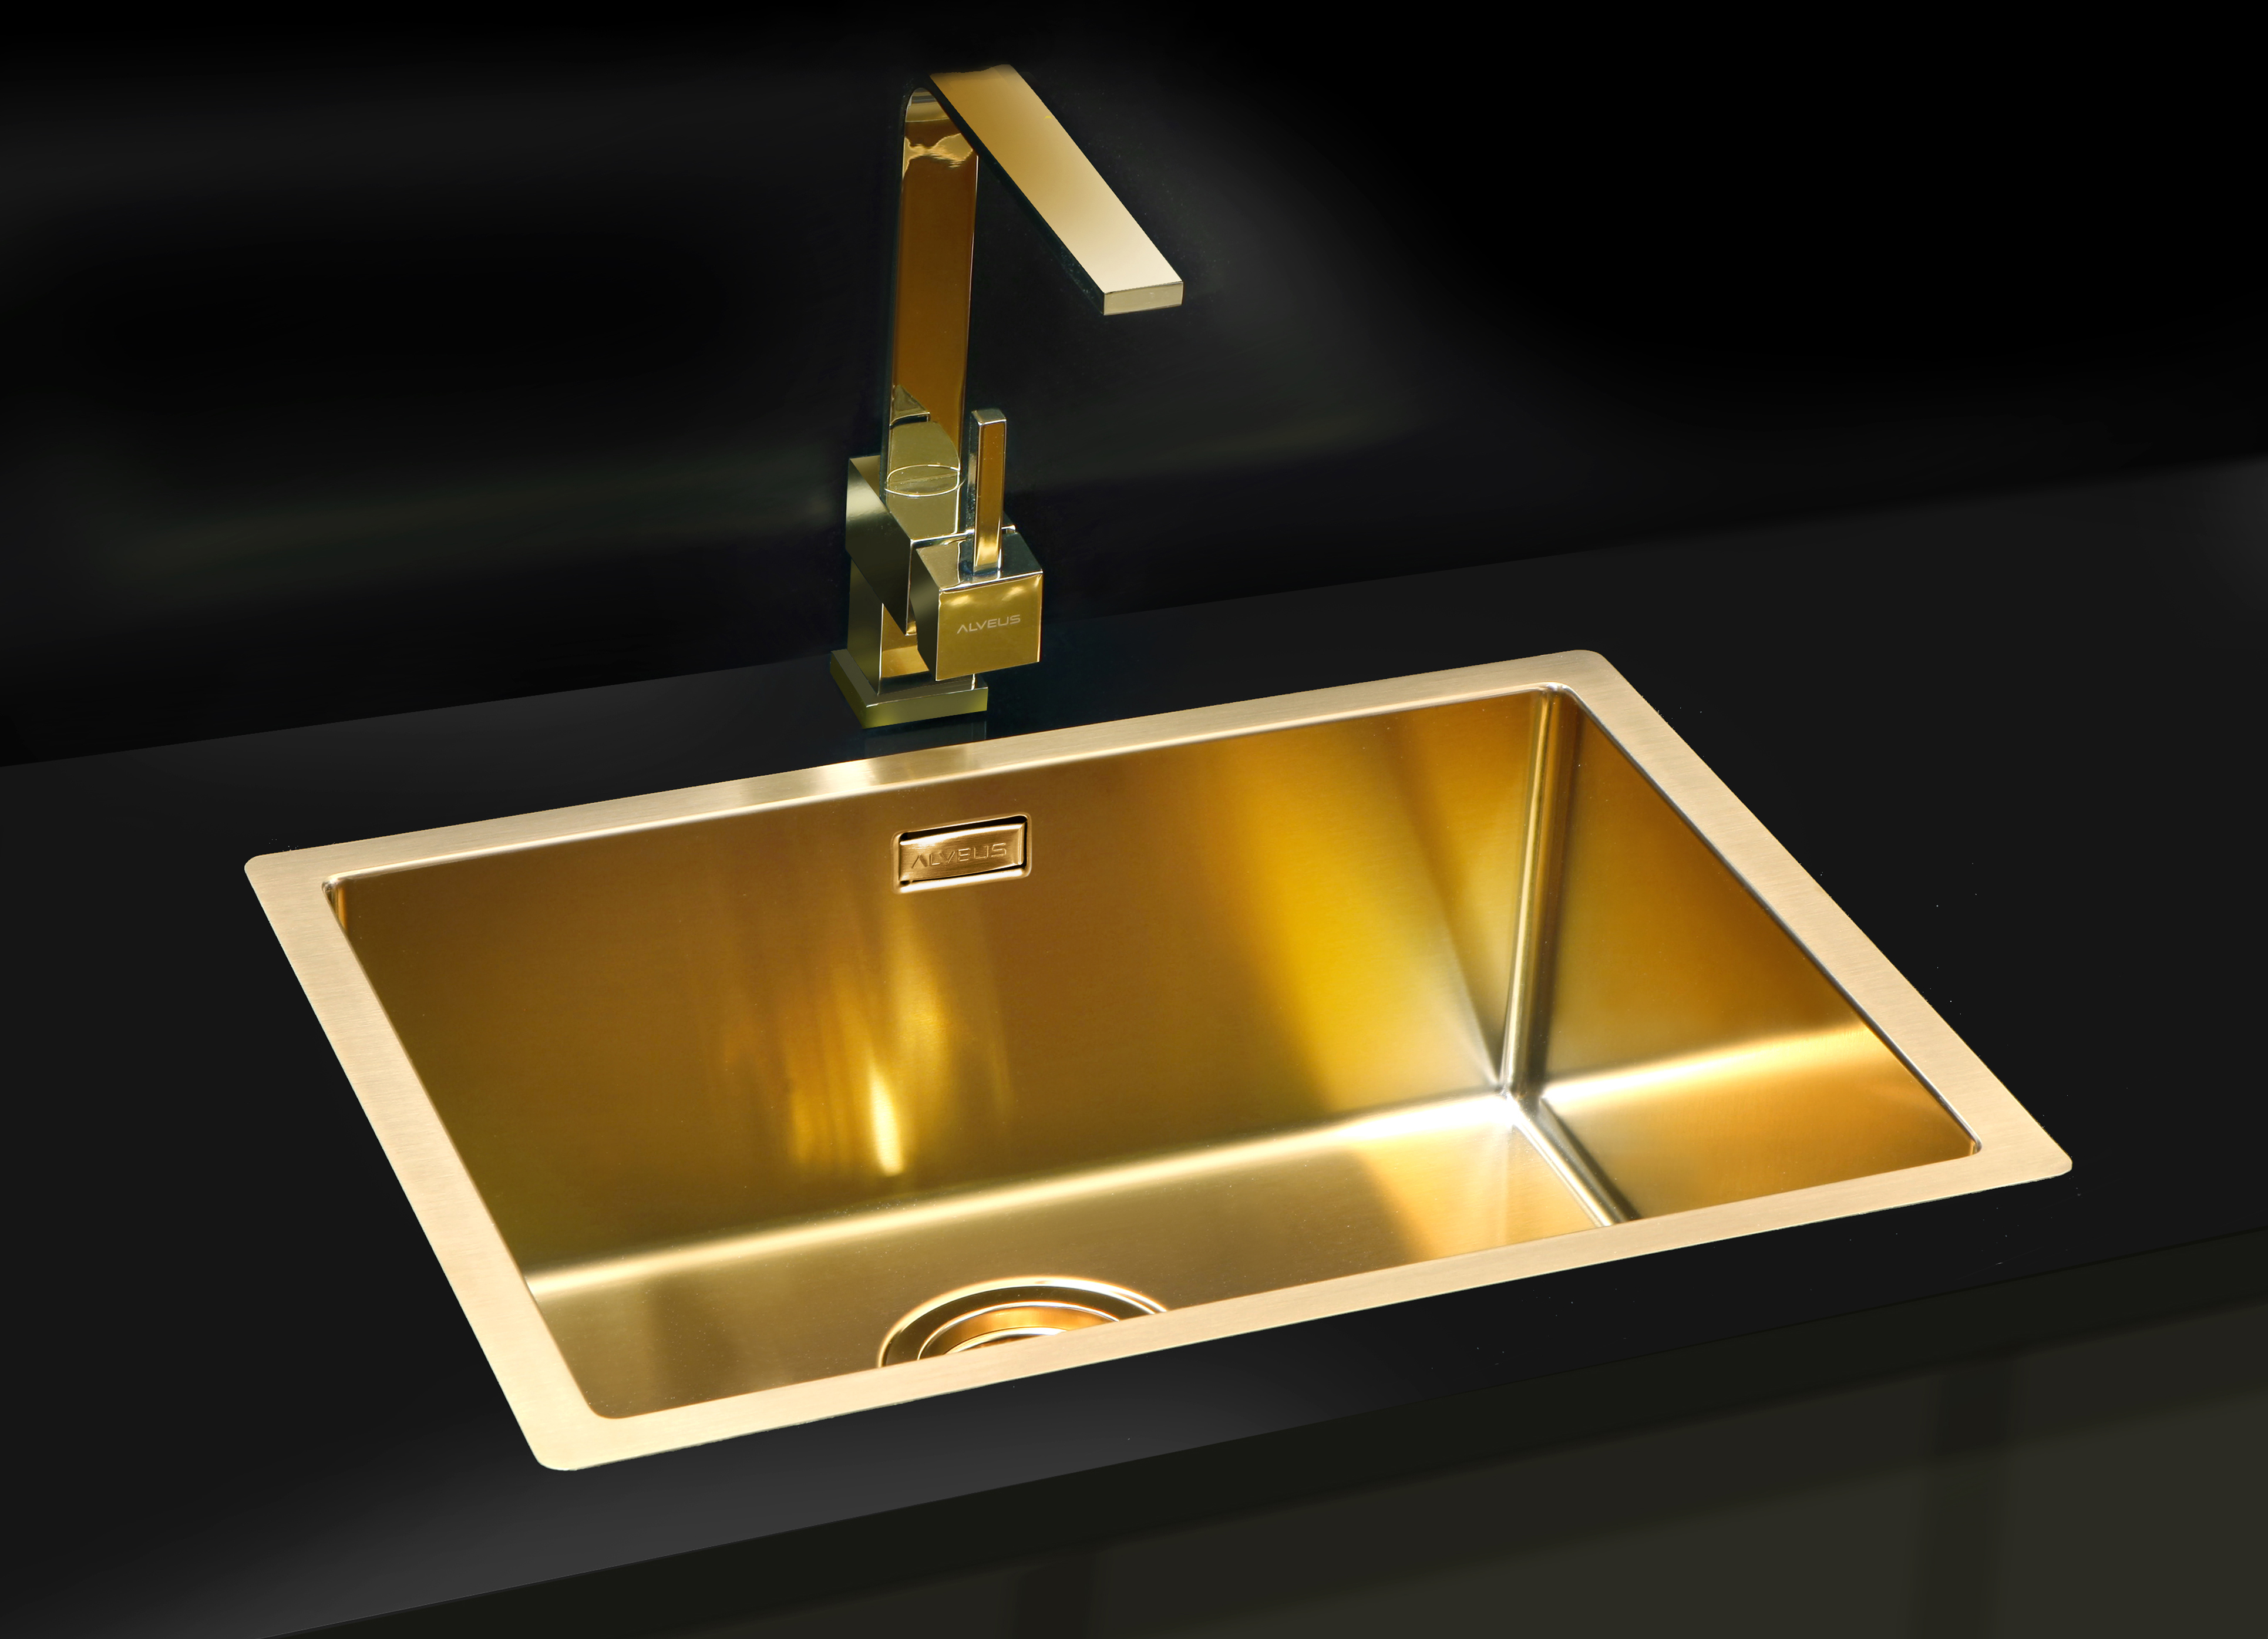 Golden sink maintenance